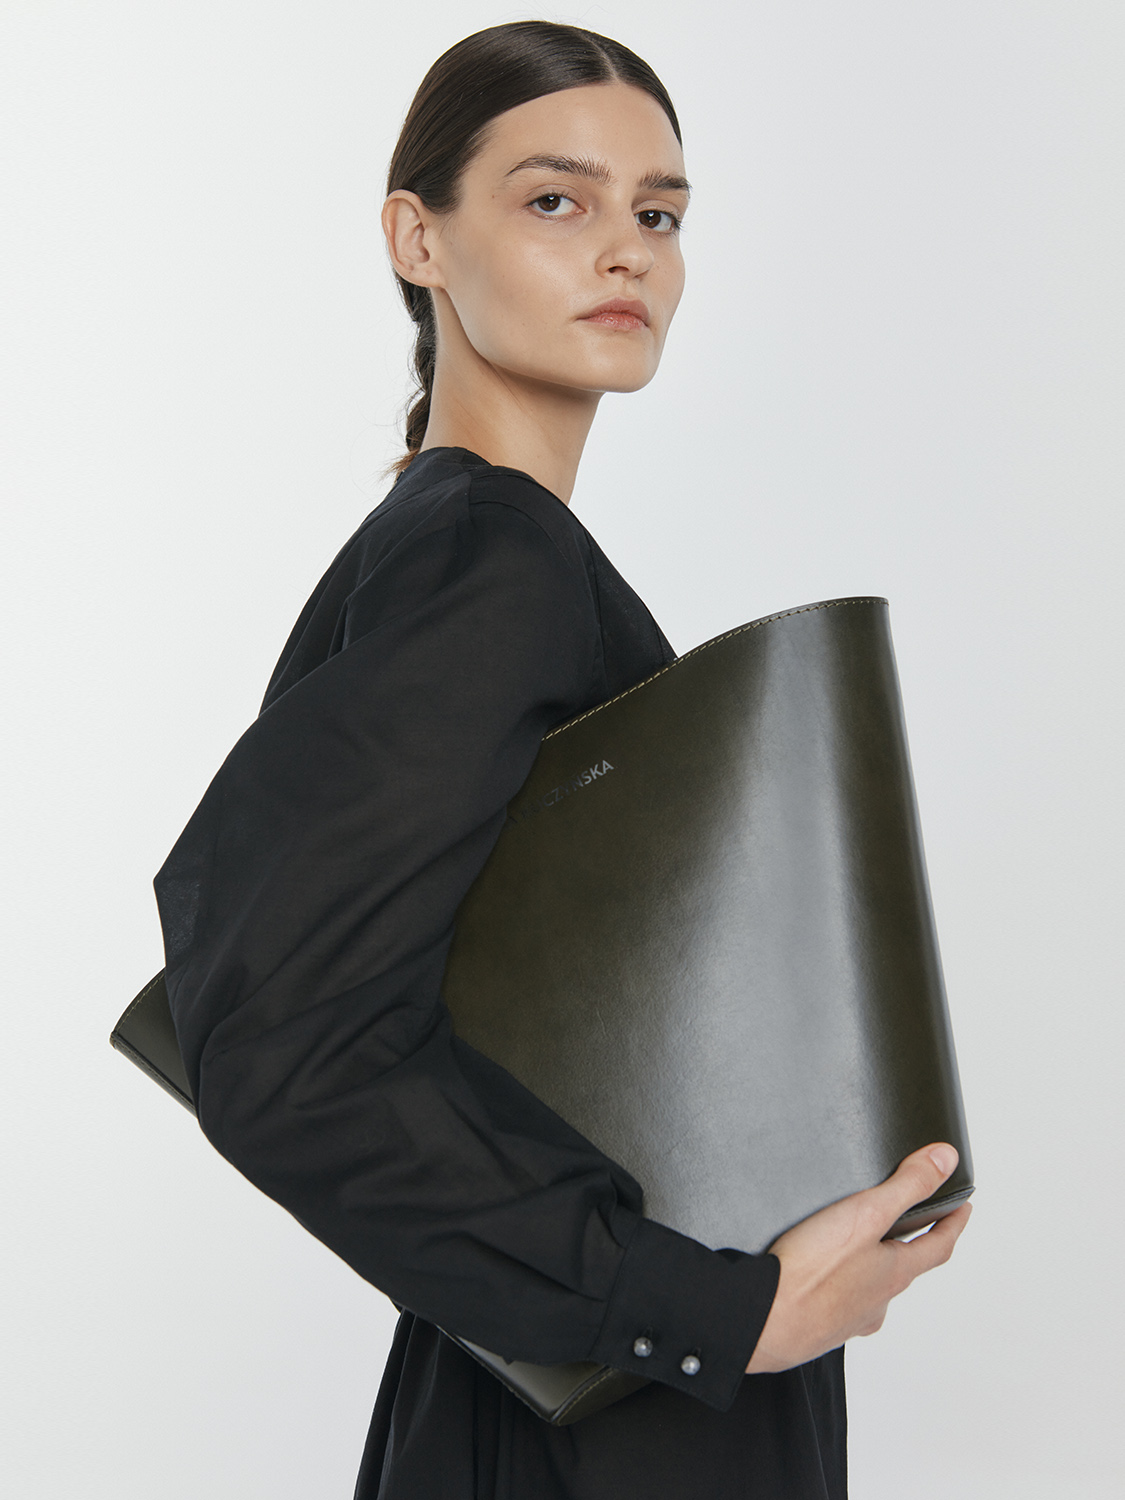 Gaia Verde vegetable tanned leather bag / last pieces - Ania Kuczyńska